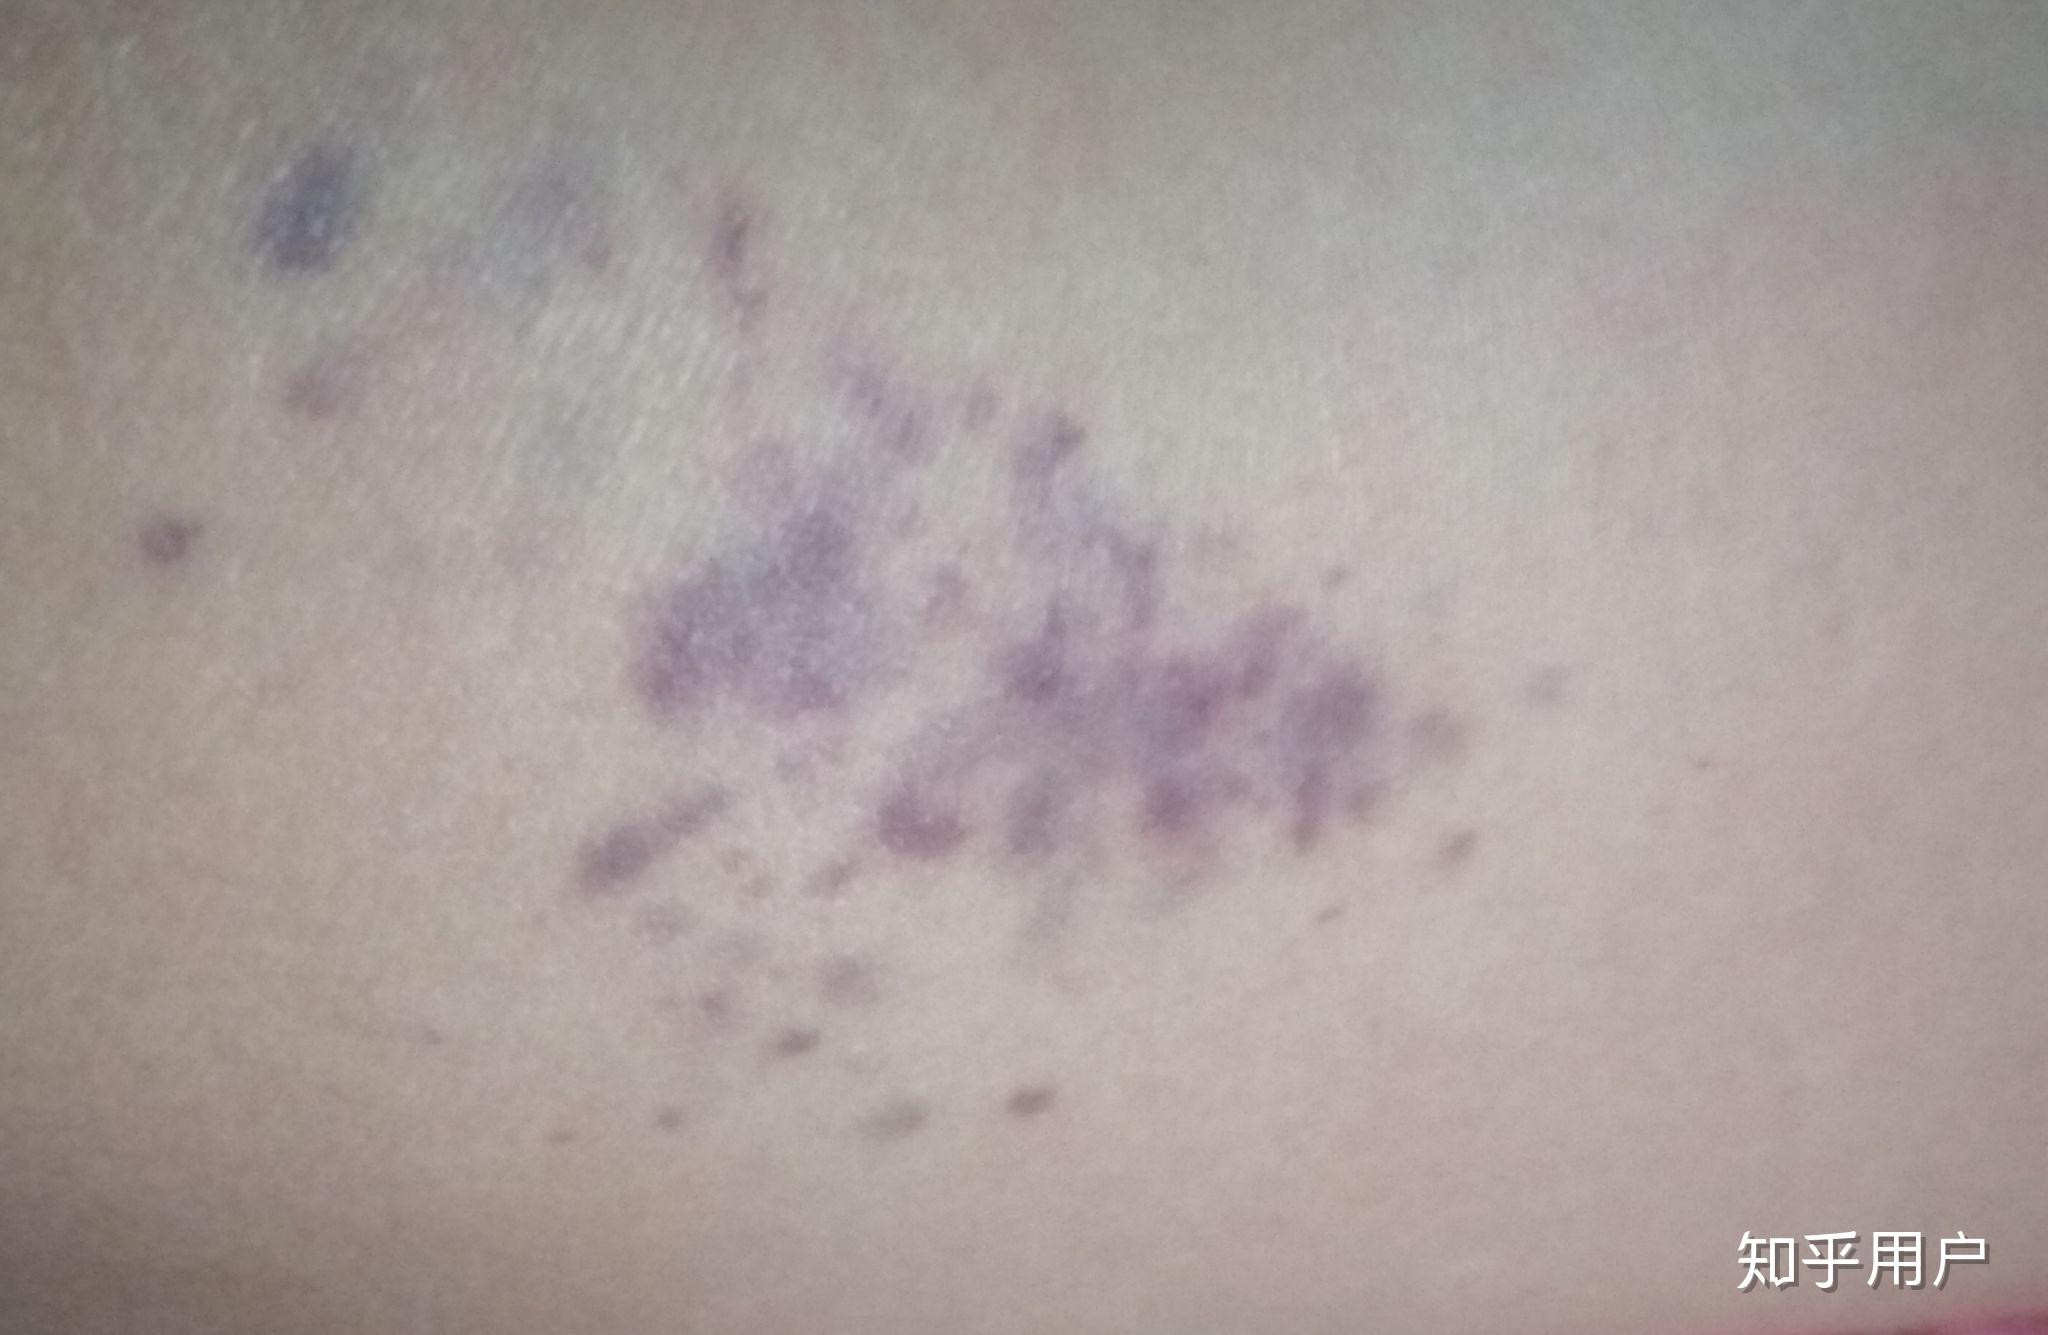 艾滋病早期大腿内紫斑图片